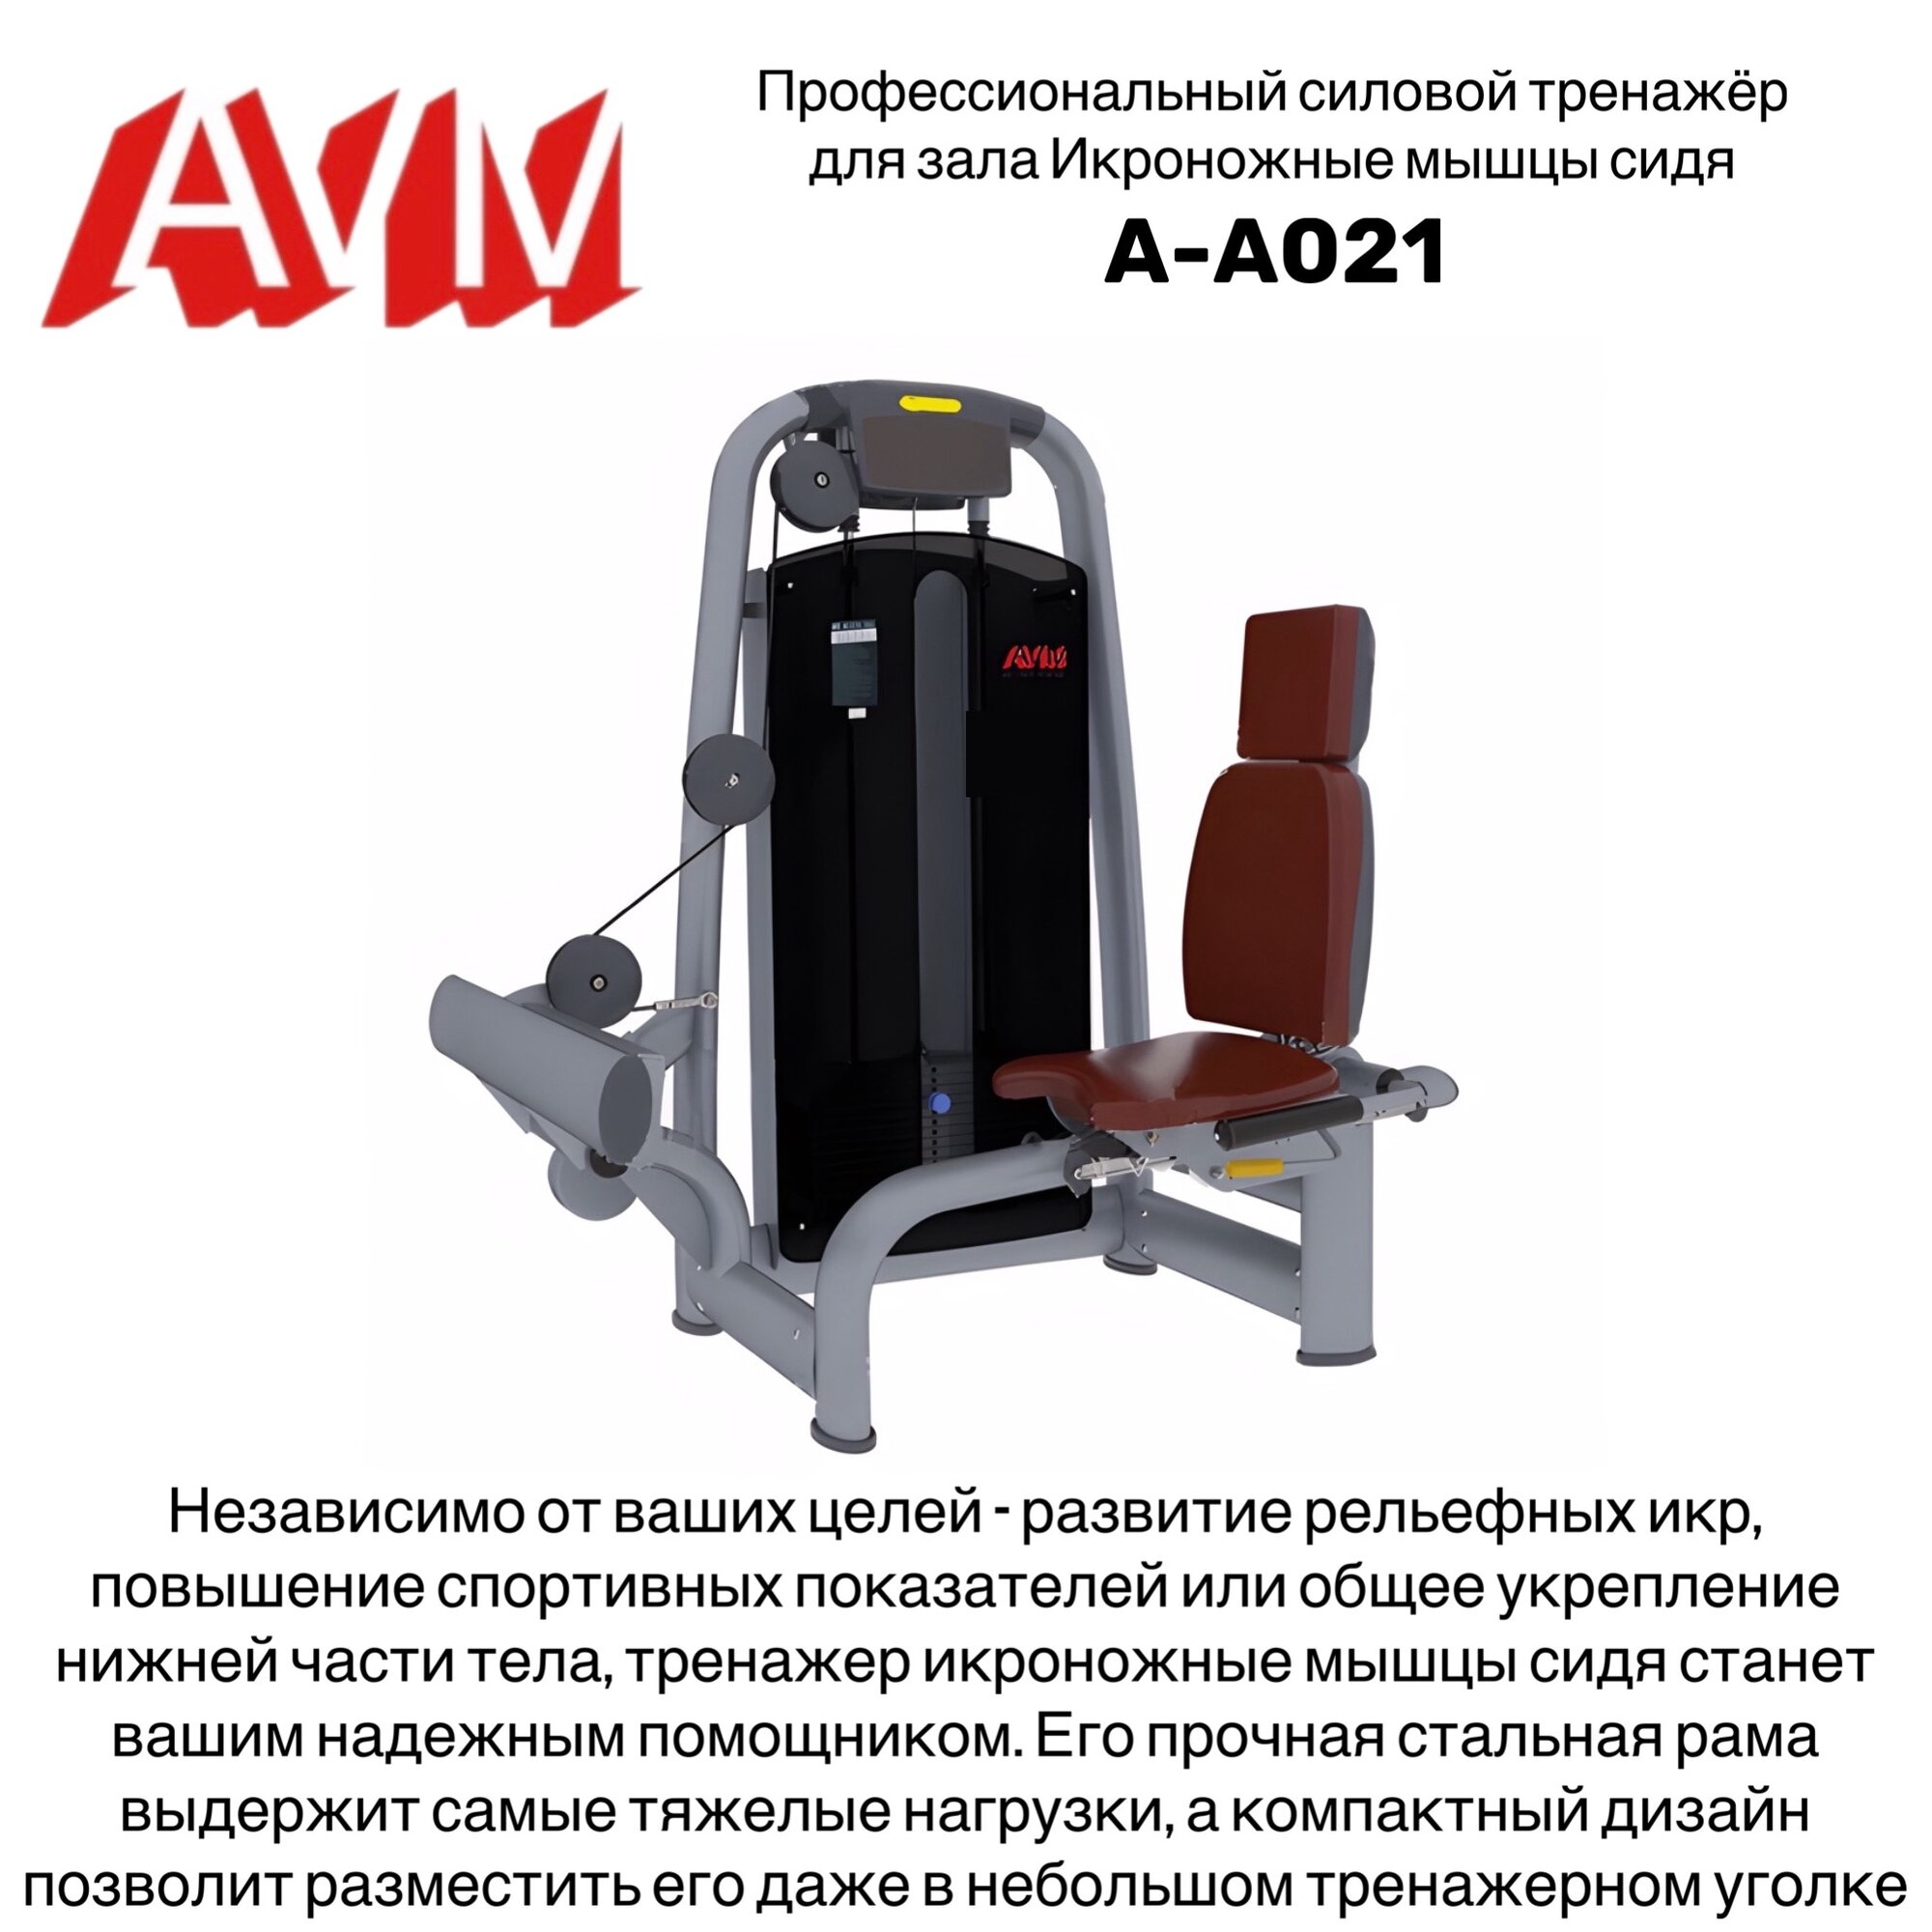 Профессиональный силовой тренажер для зала Икроножные мышцы сидя AVM A-A021